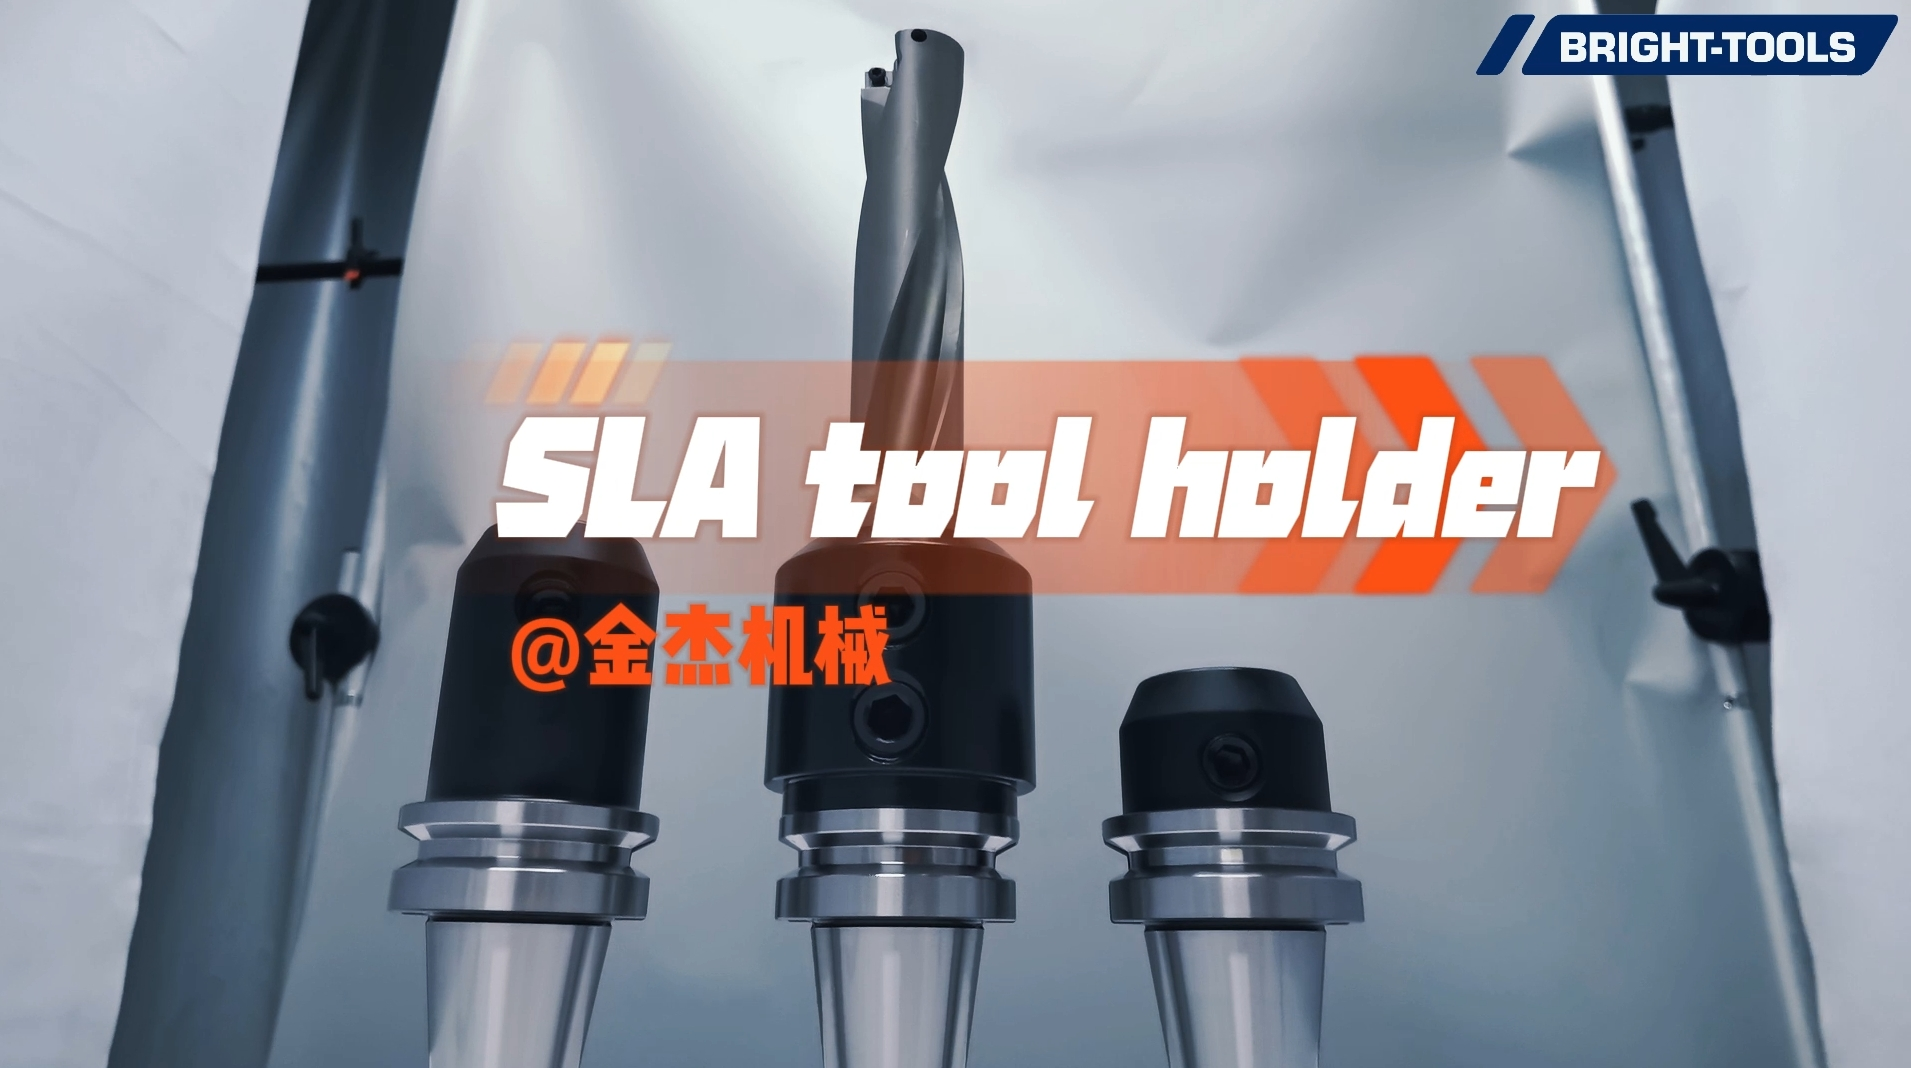 SLA 도구 홀더를 잠그는 방법